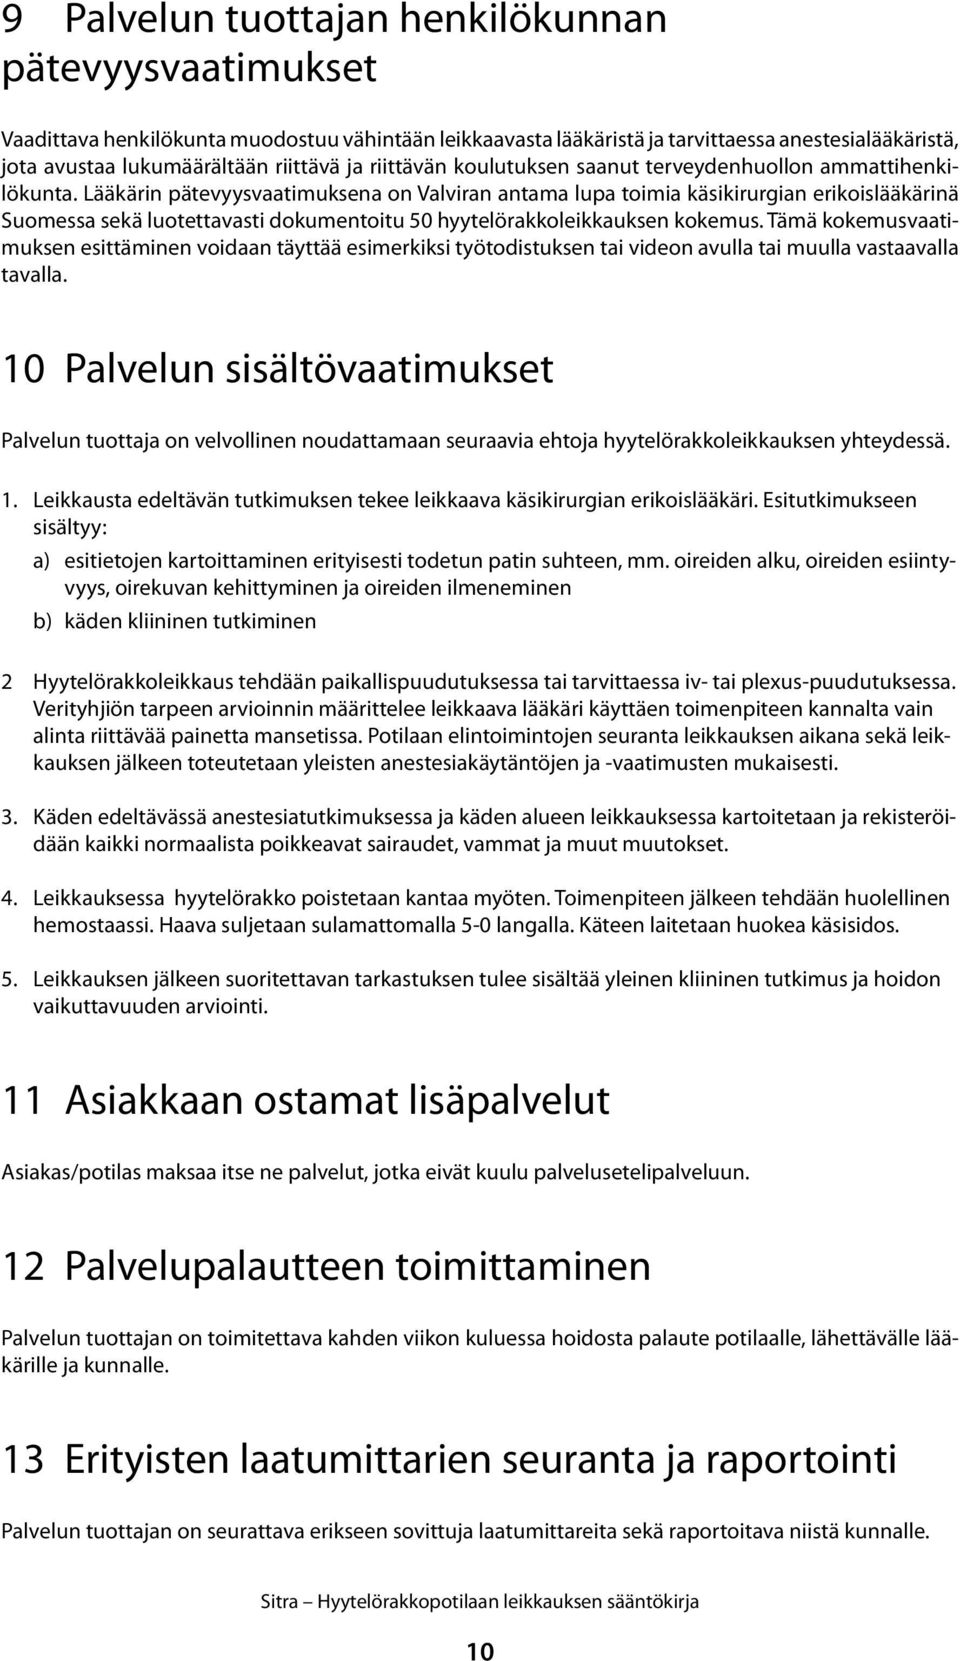 Lääkärin pätevyysvaatimuksena on Valviran antama lupa toimia käsikirurgian erikoislääkärinä Suomessa sekä luotettavasti dokumentoitu 50 hyytelörakkoleikkauksen kokemus.